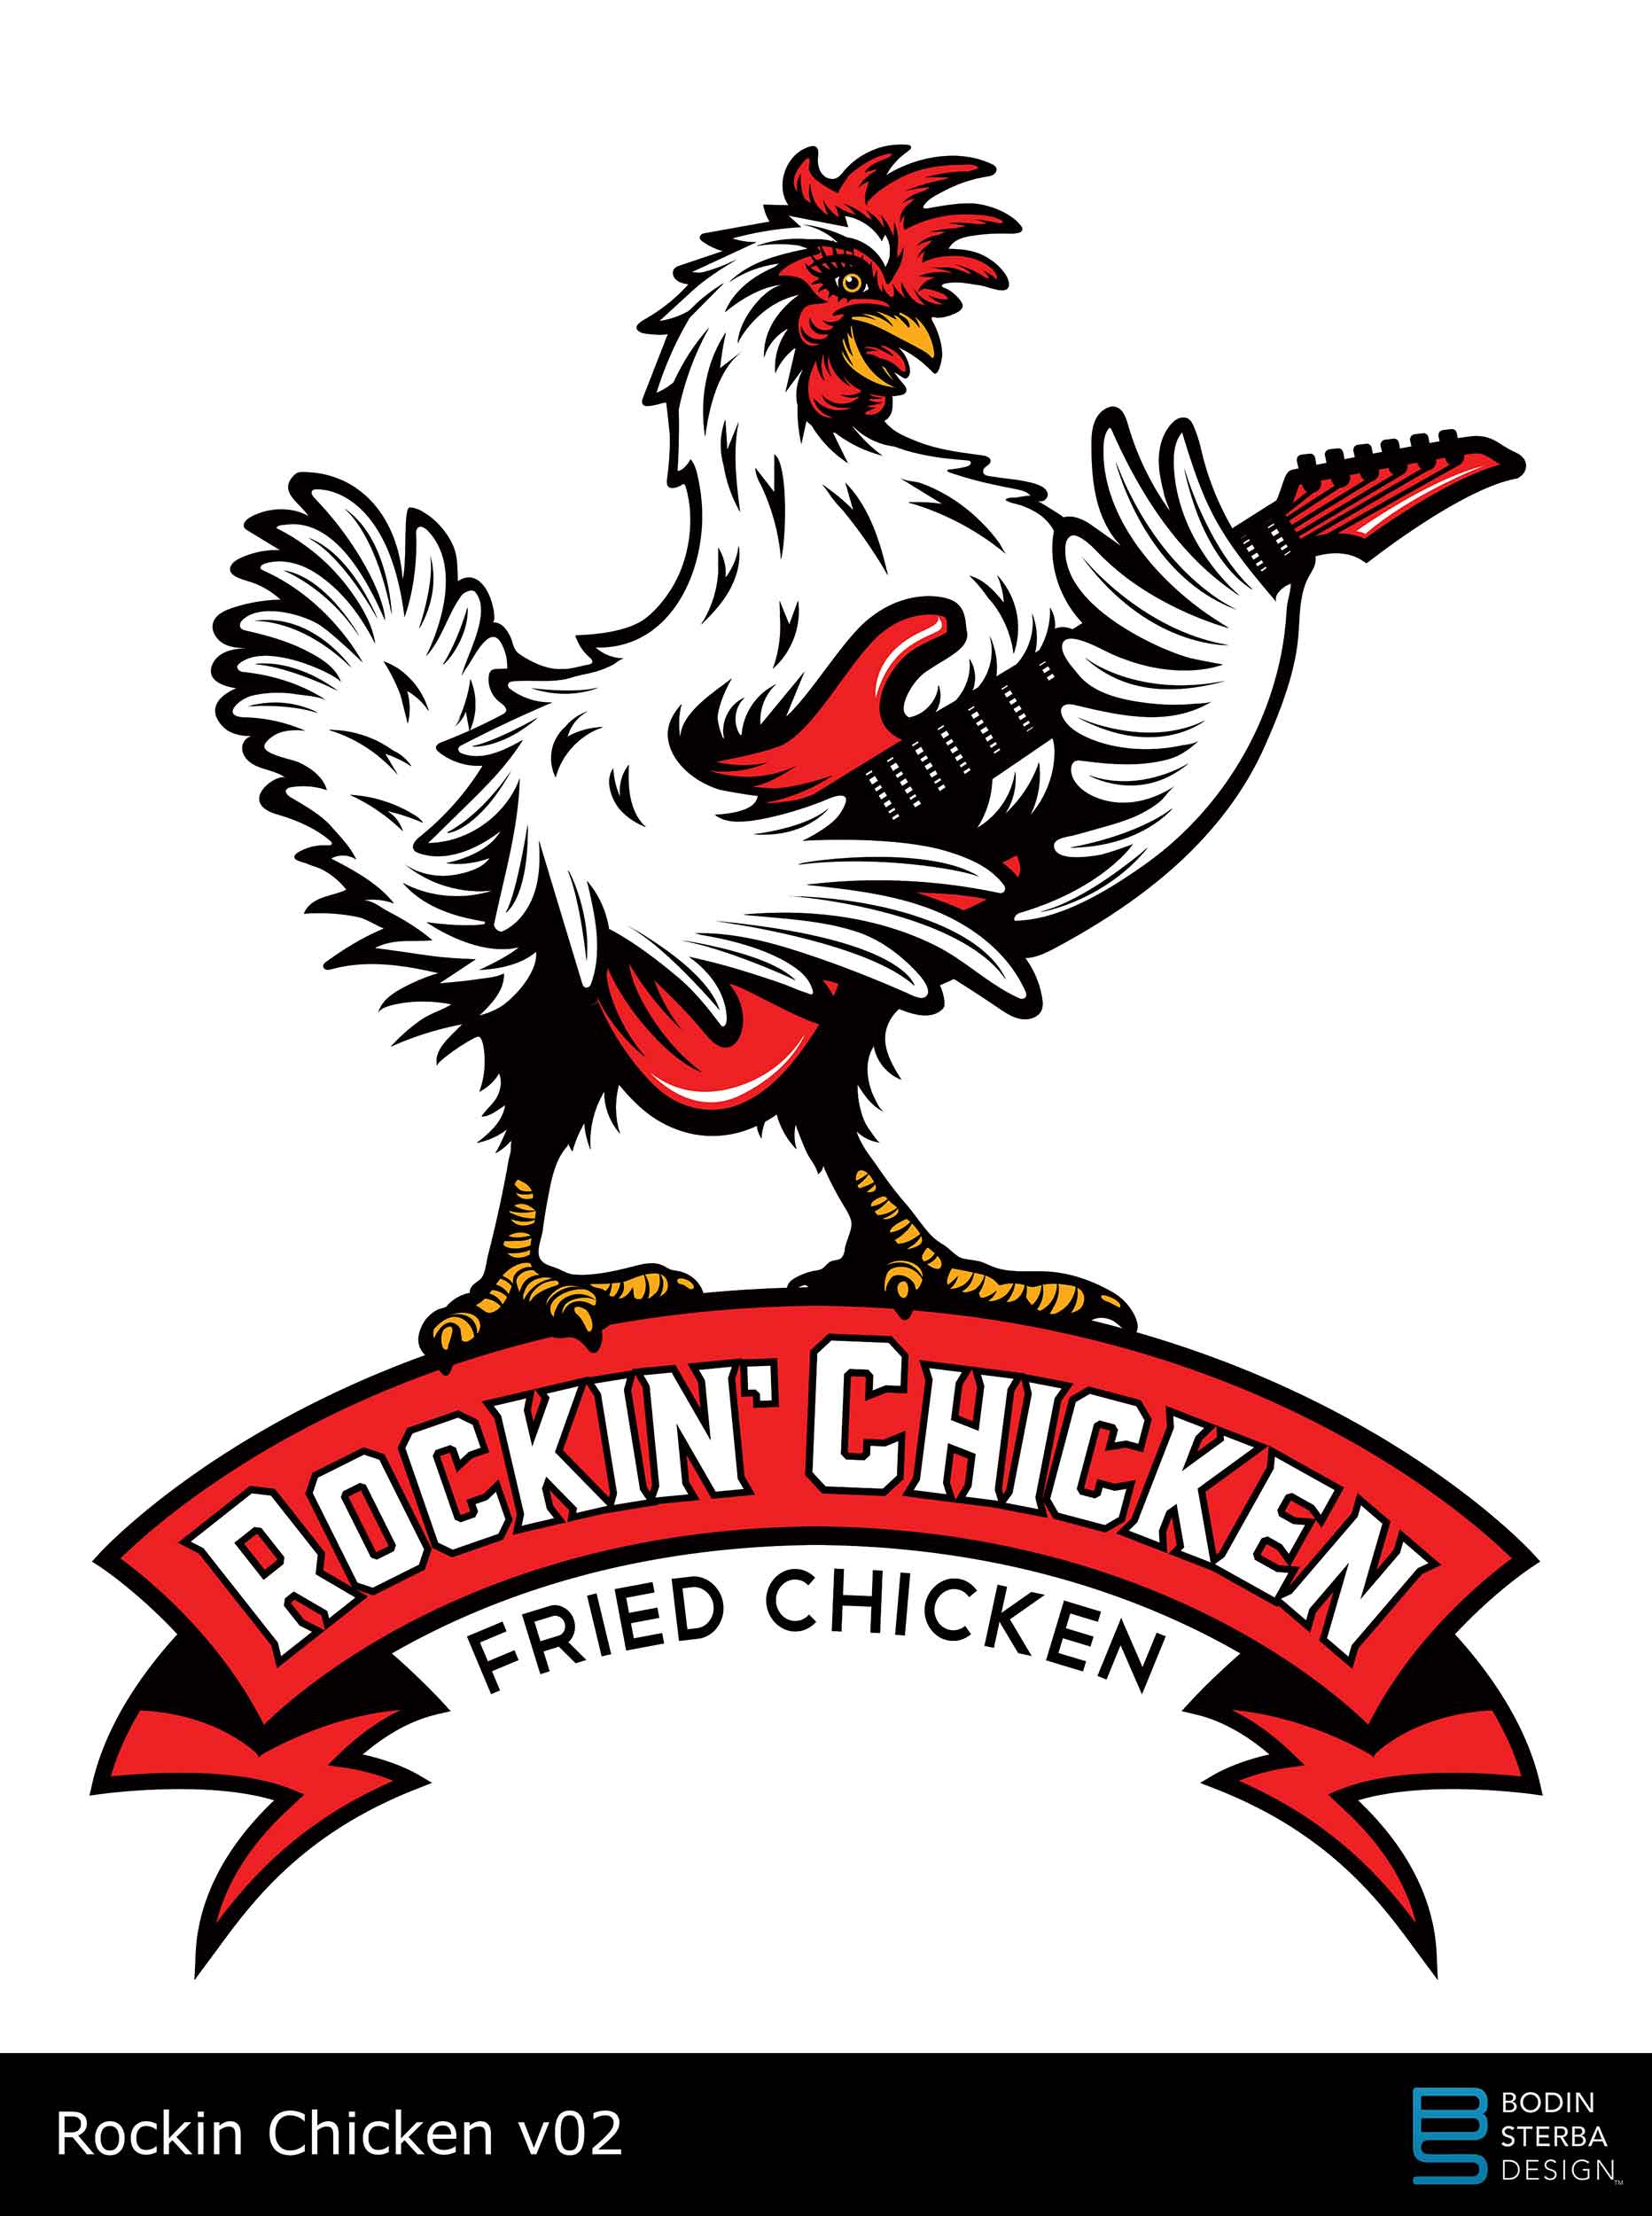 Rockin' Chicken logo v02 pitch